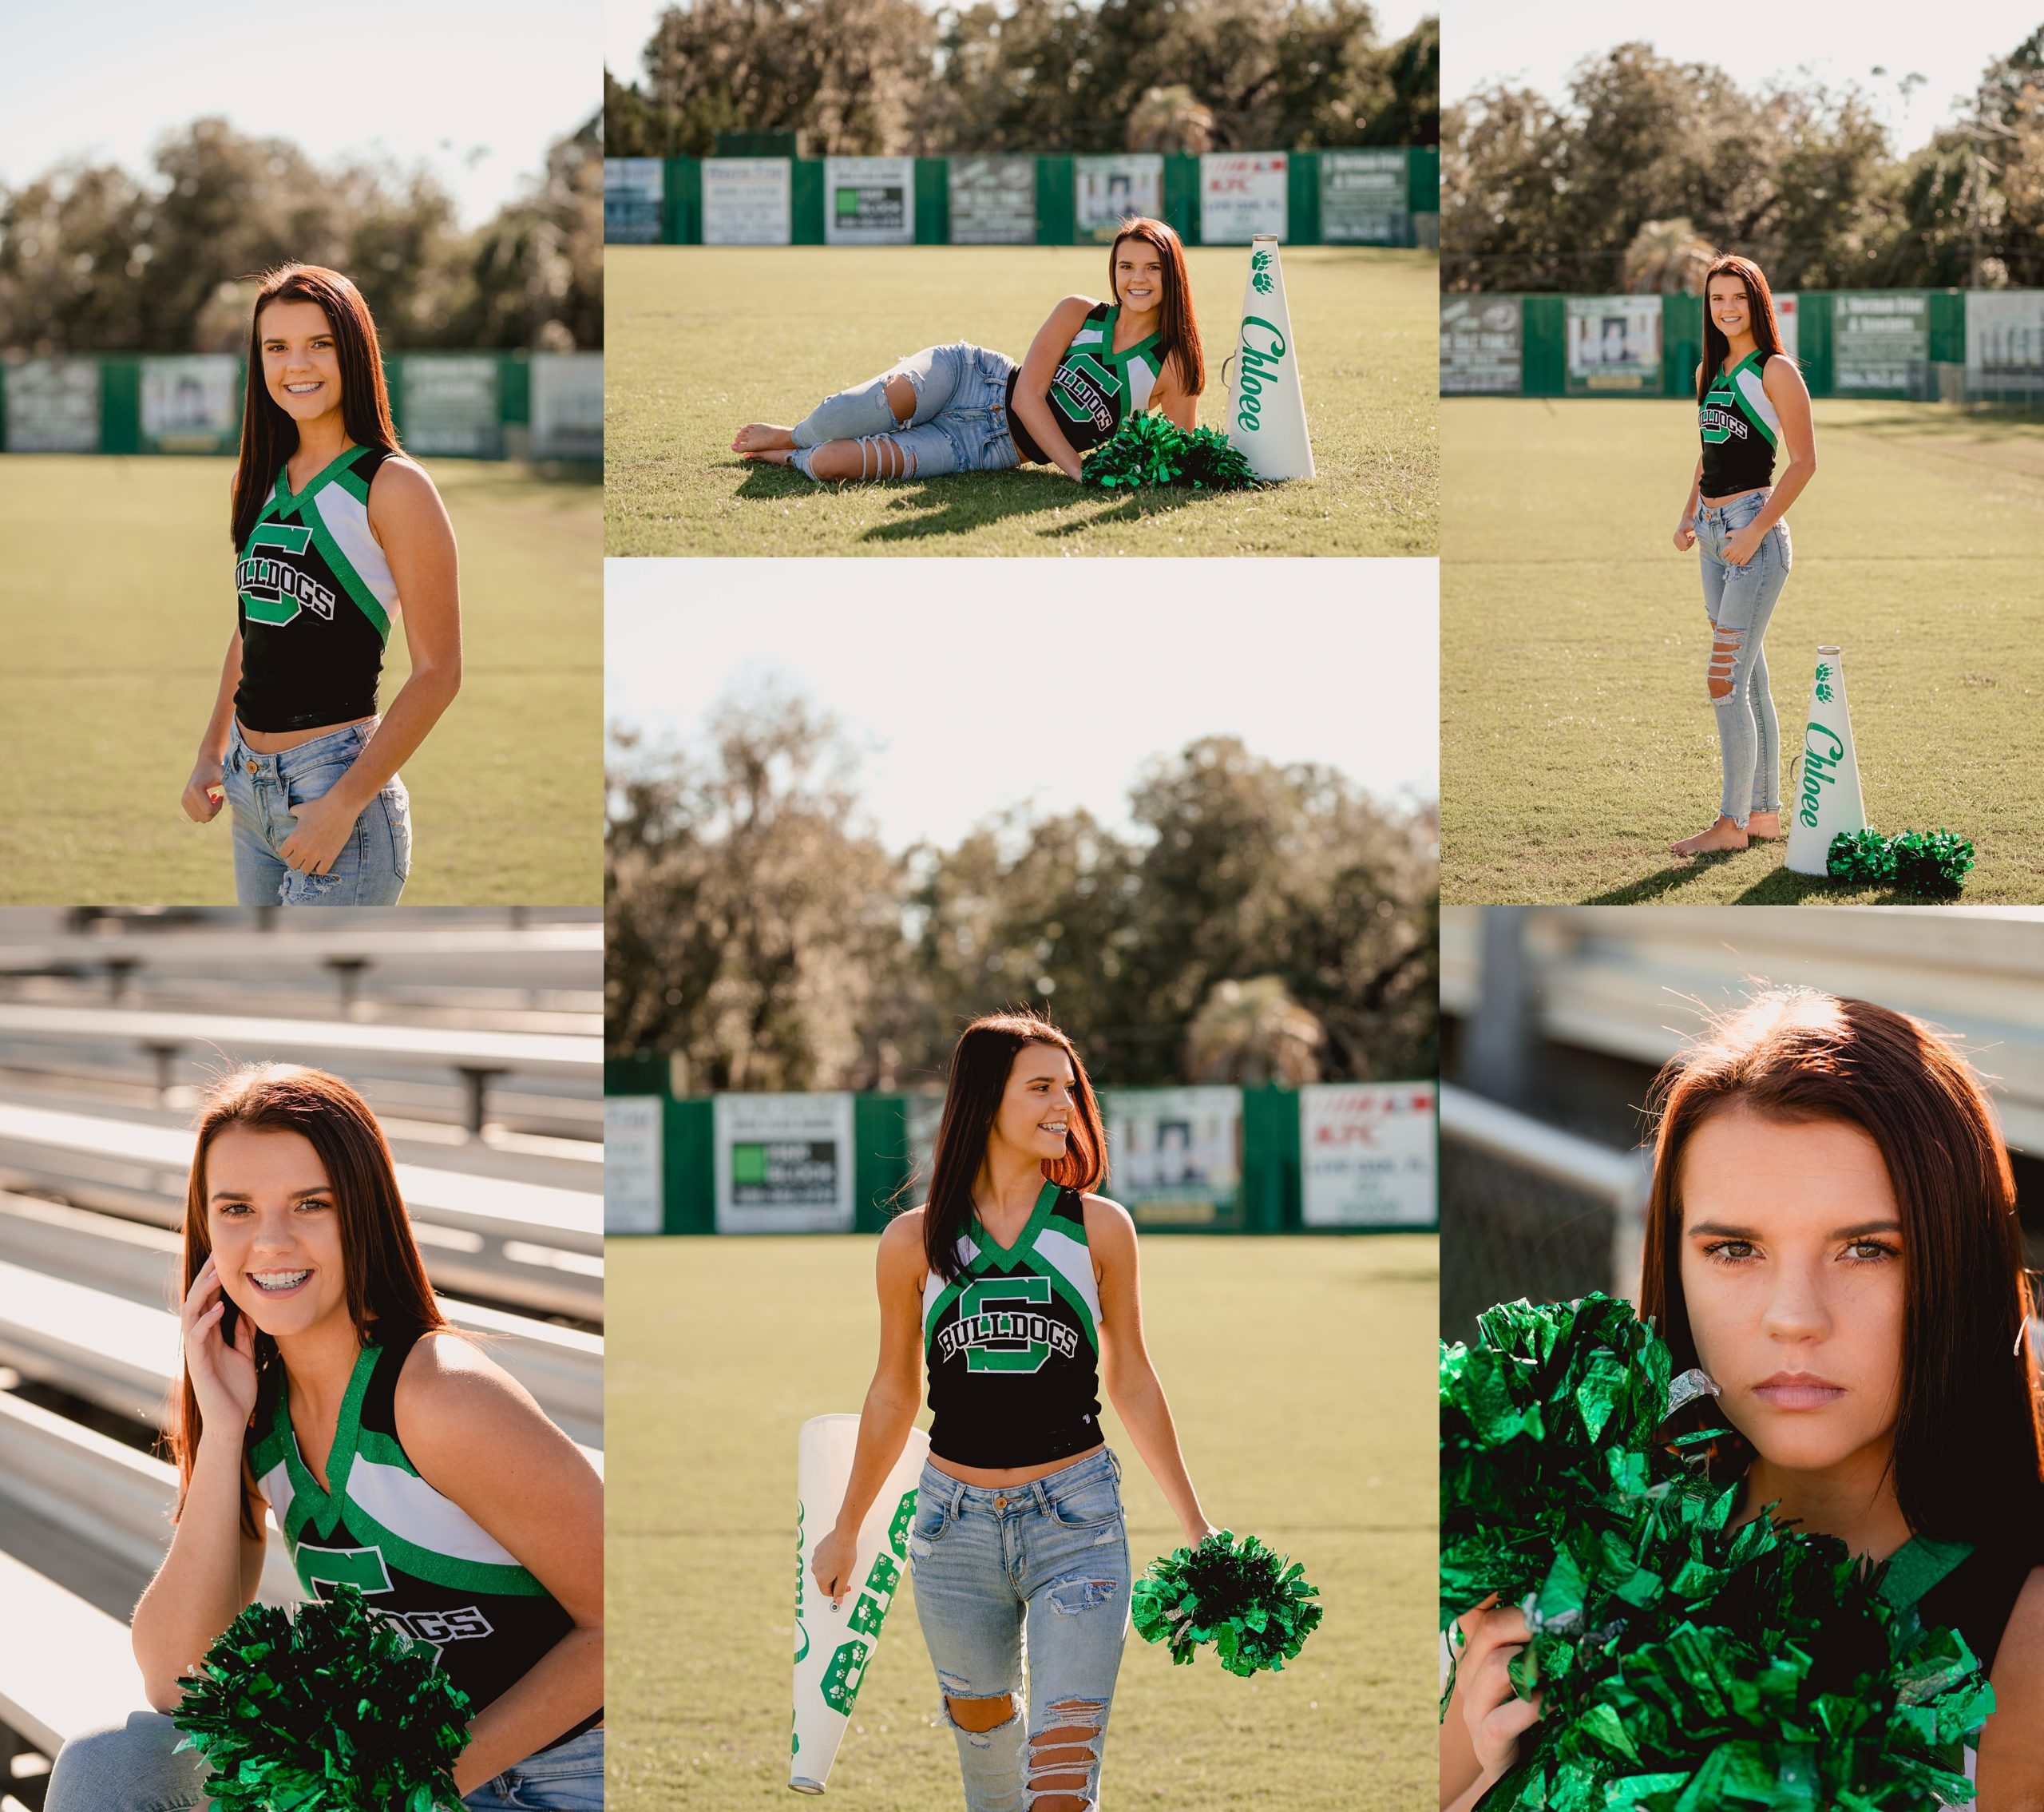 Senior cheerleader photos taken on the football field.